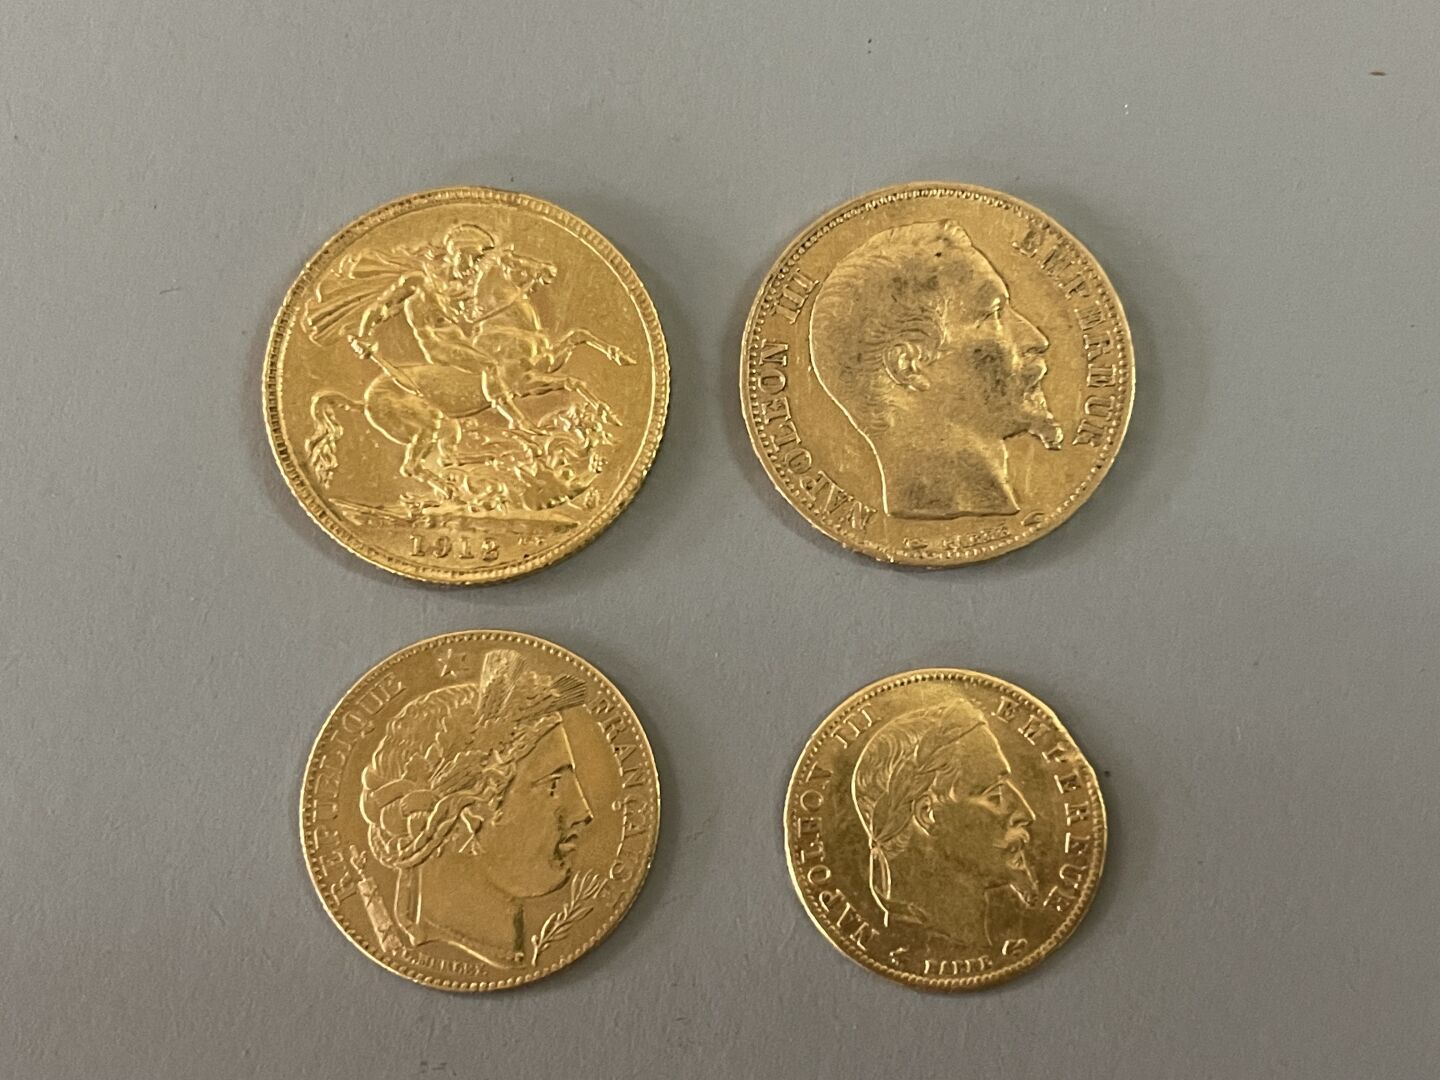 Null Monedas de oro:

- 1 soberano de oro de 1912

- 1 moneda de oro de 20 franc&hellip;